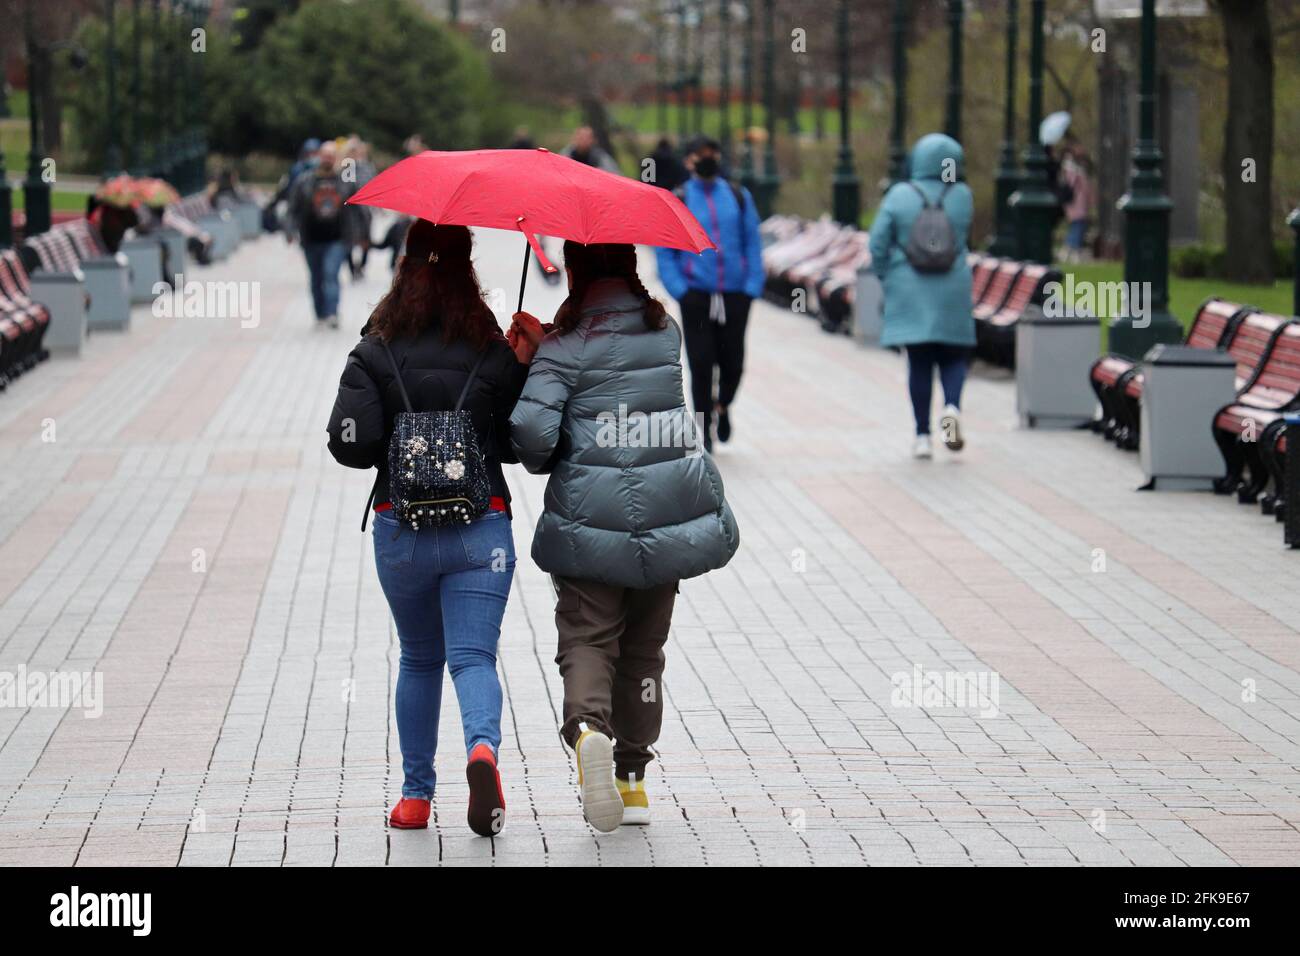 Regen in der Stadt, zwei Mädchen mit einem Regenschirm gehen auf einer Straße vor dem Hintergrund der Menschen. Regnerisches Wetter, Frühlingssturm Stockfoto